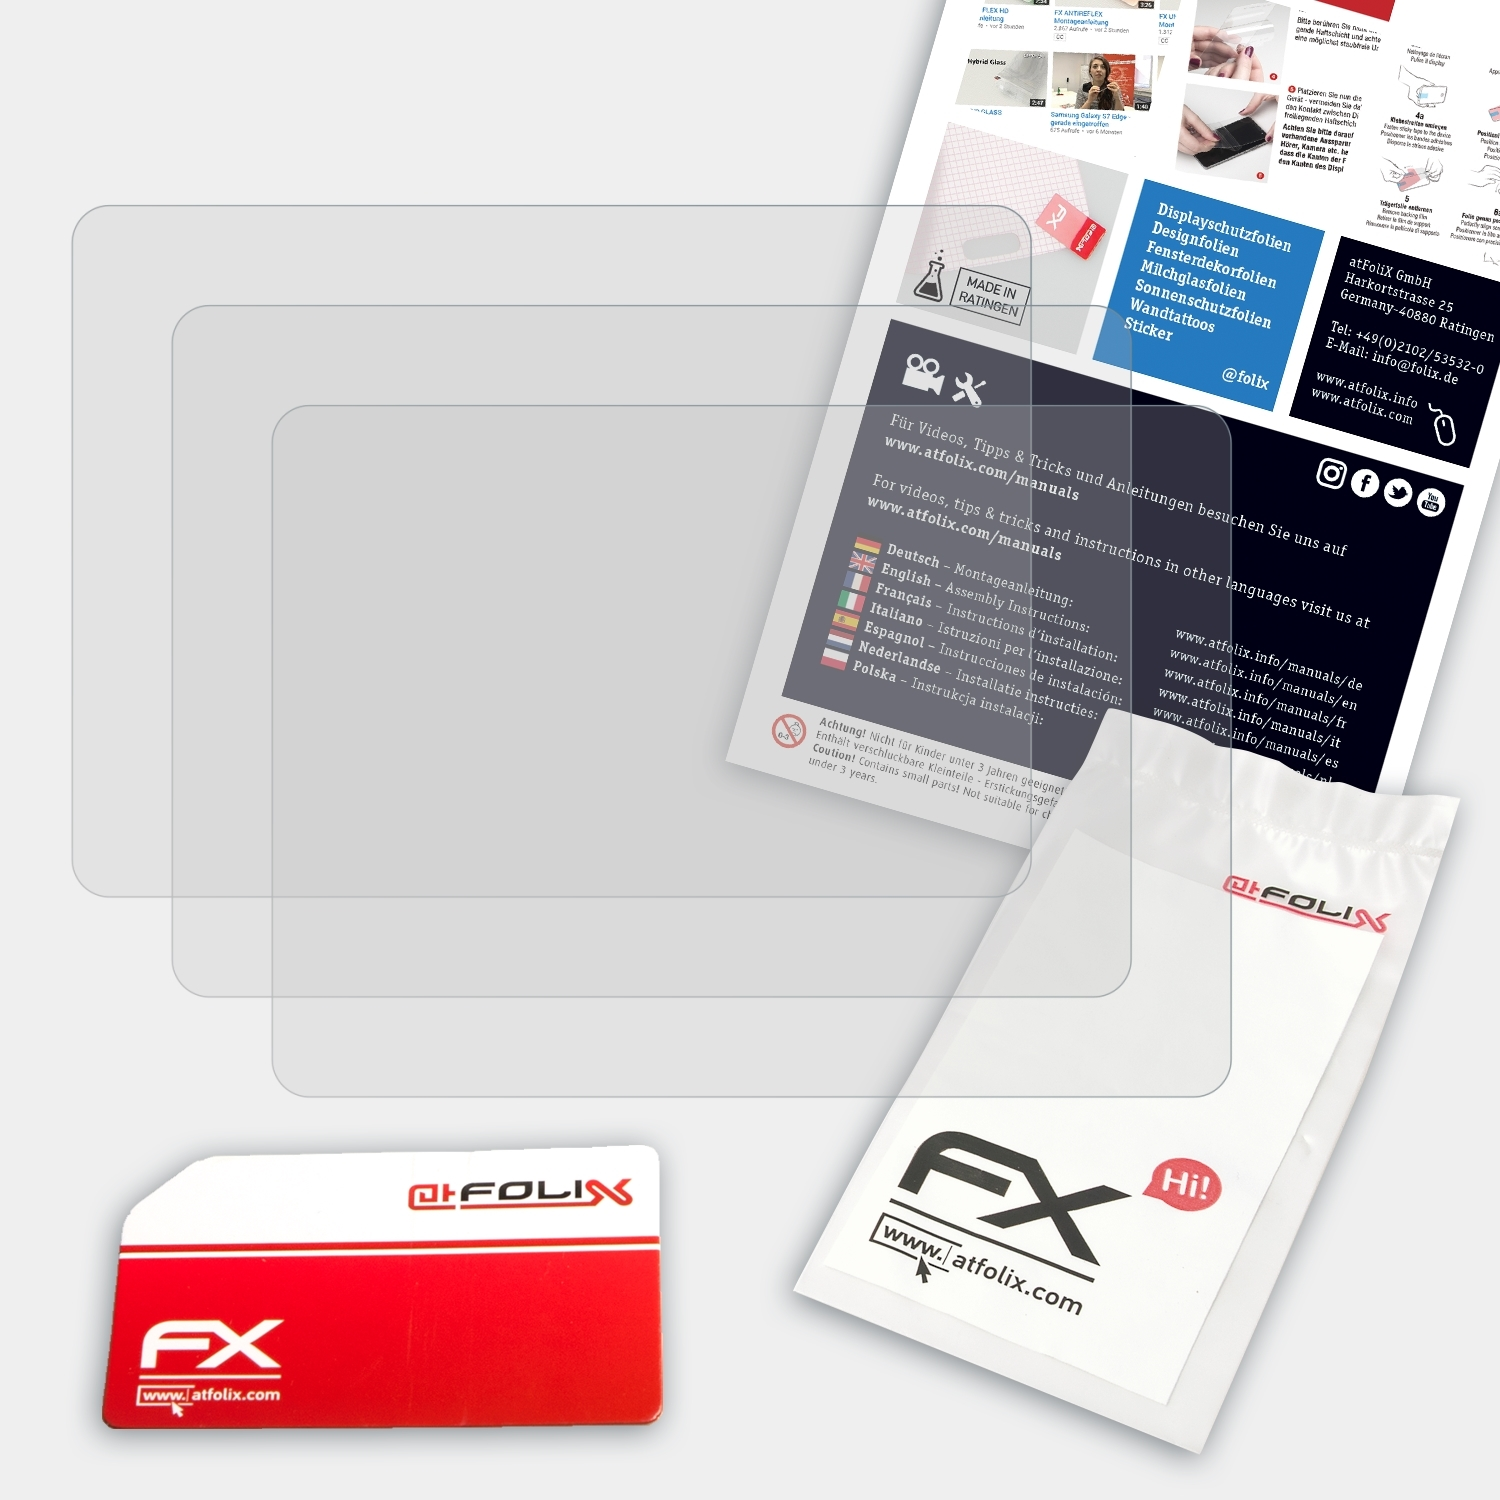 ATFOLIX 3x FX-Antireflex Sony DSC-HX350) Displayschutz(für